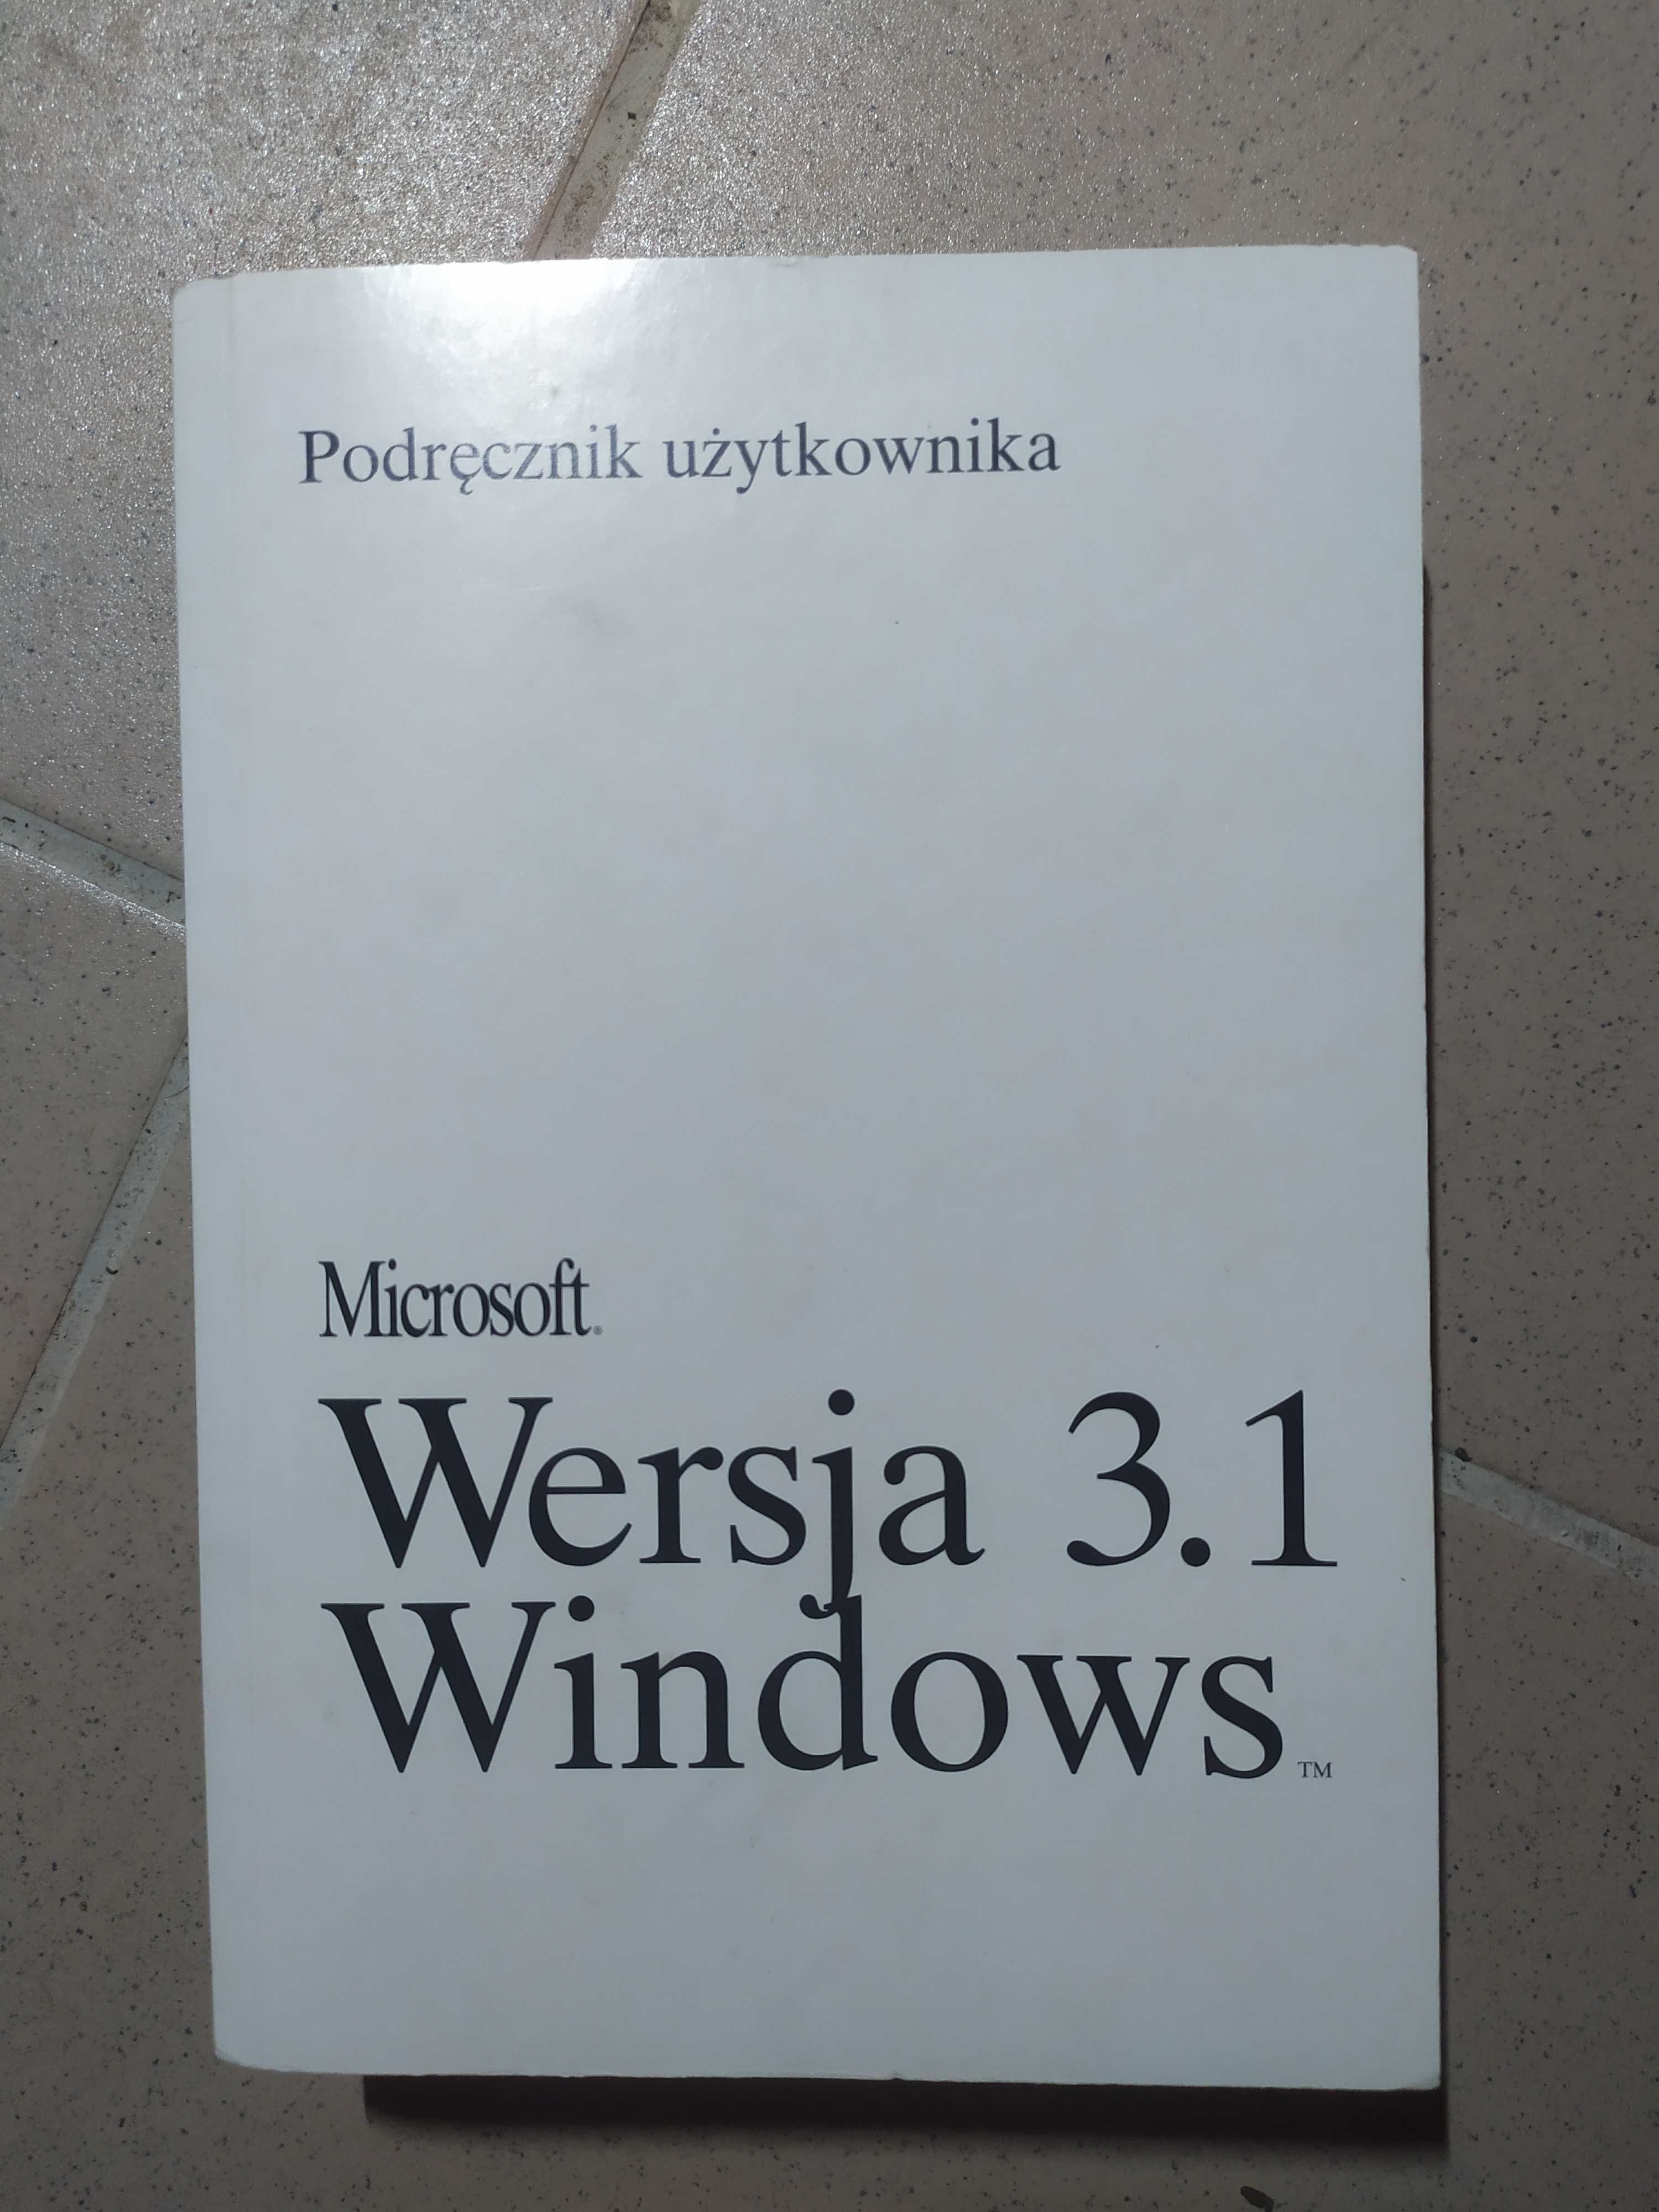 Microsoft Works 3.1 Podręcznik użytkownika